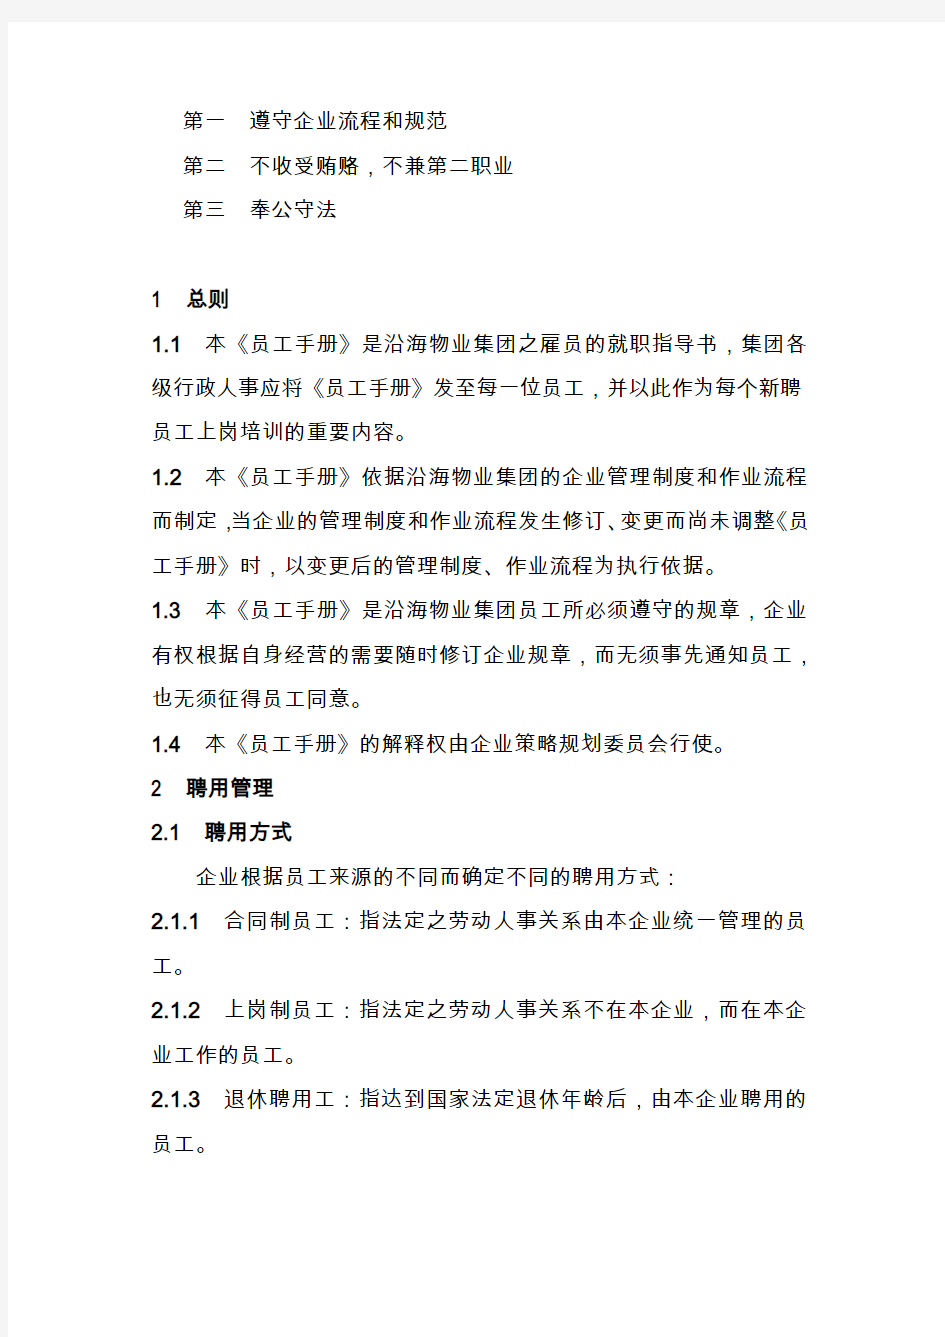 上海某公司员工手册(21页)